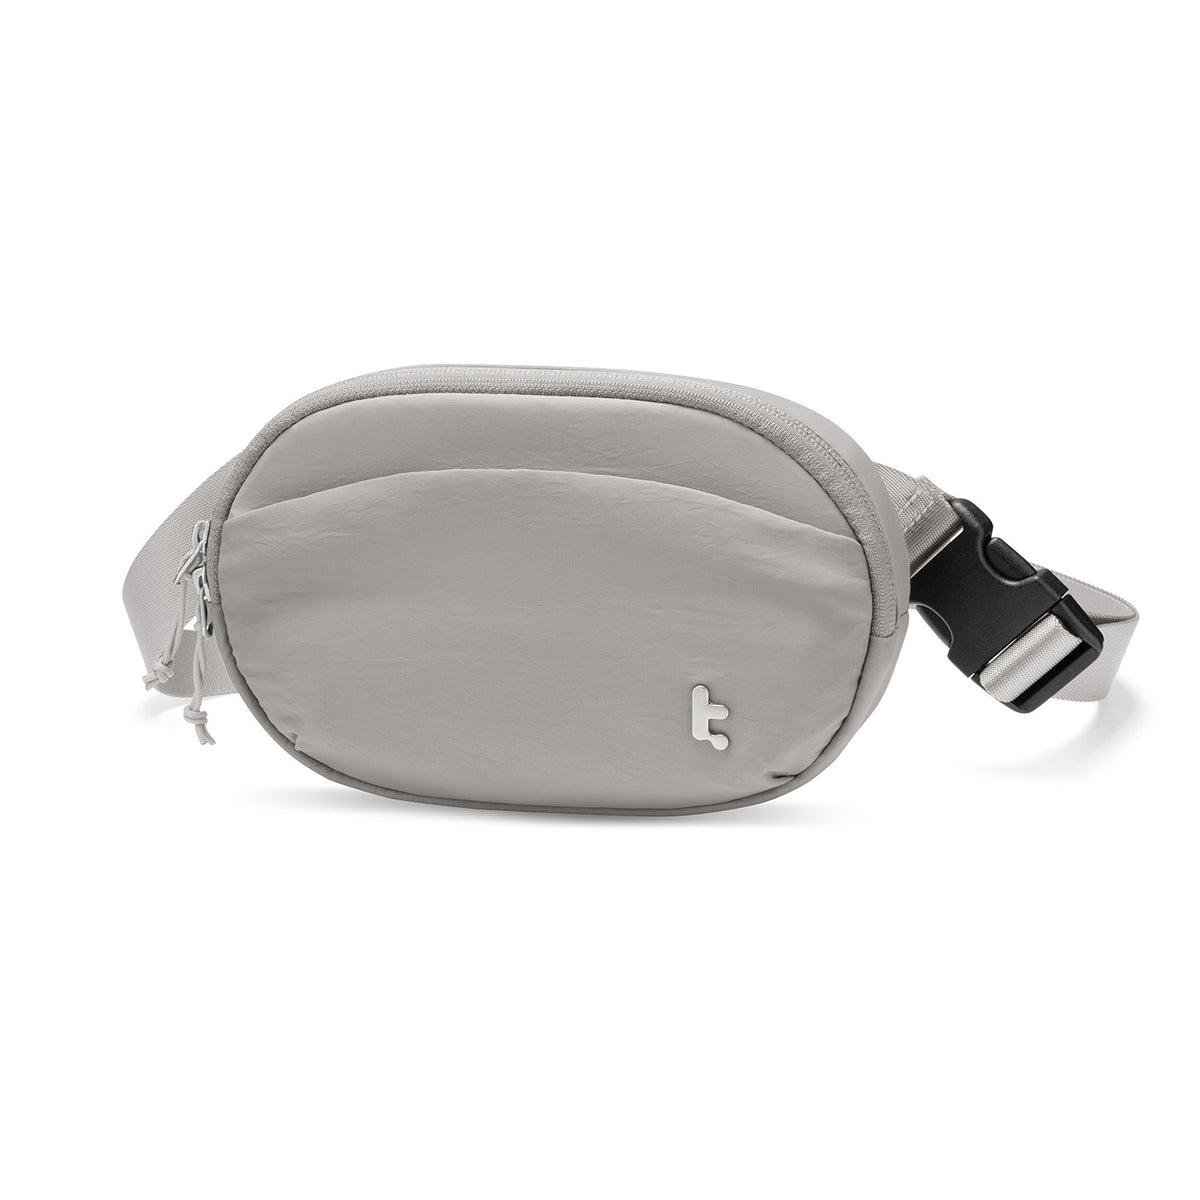 Slingbean T32 Belt Bag - Gray